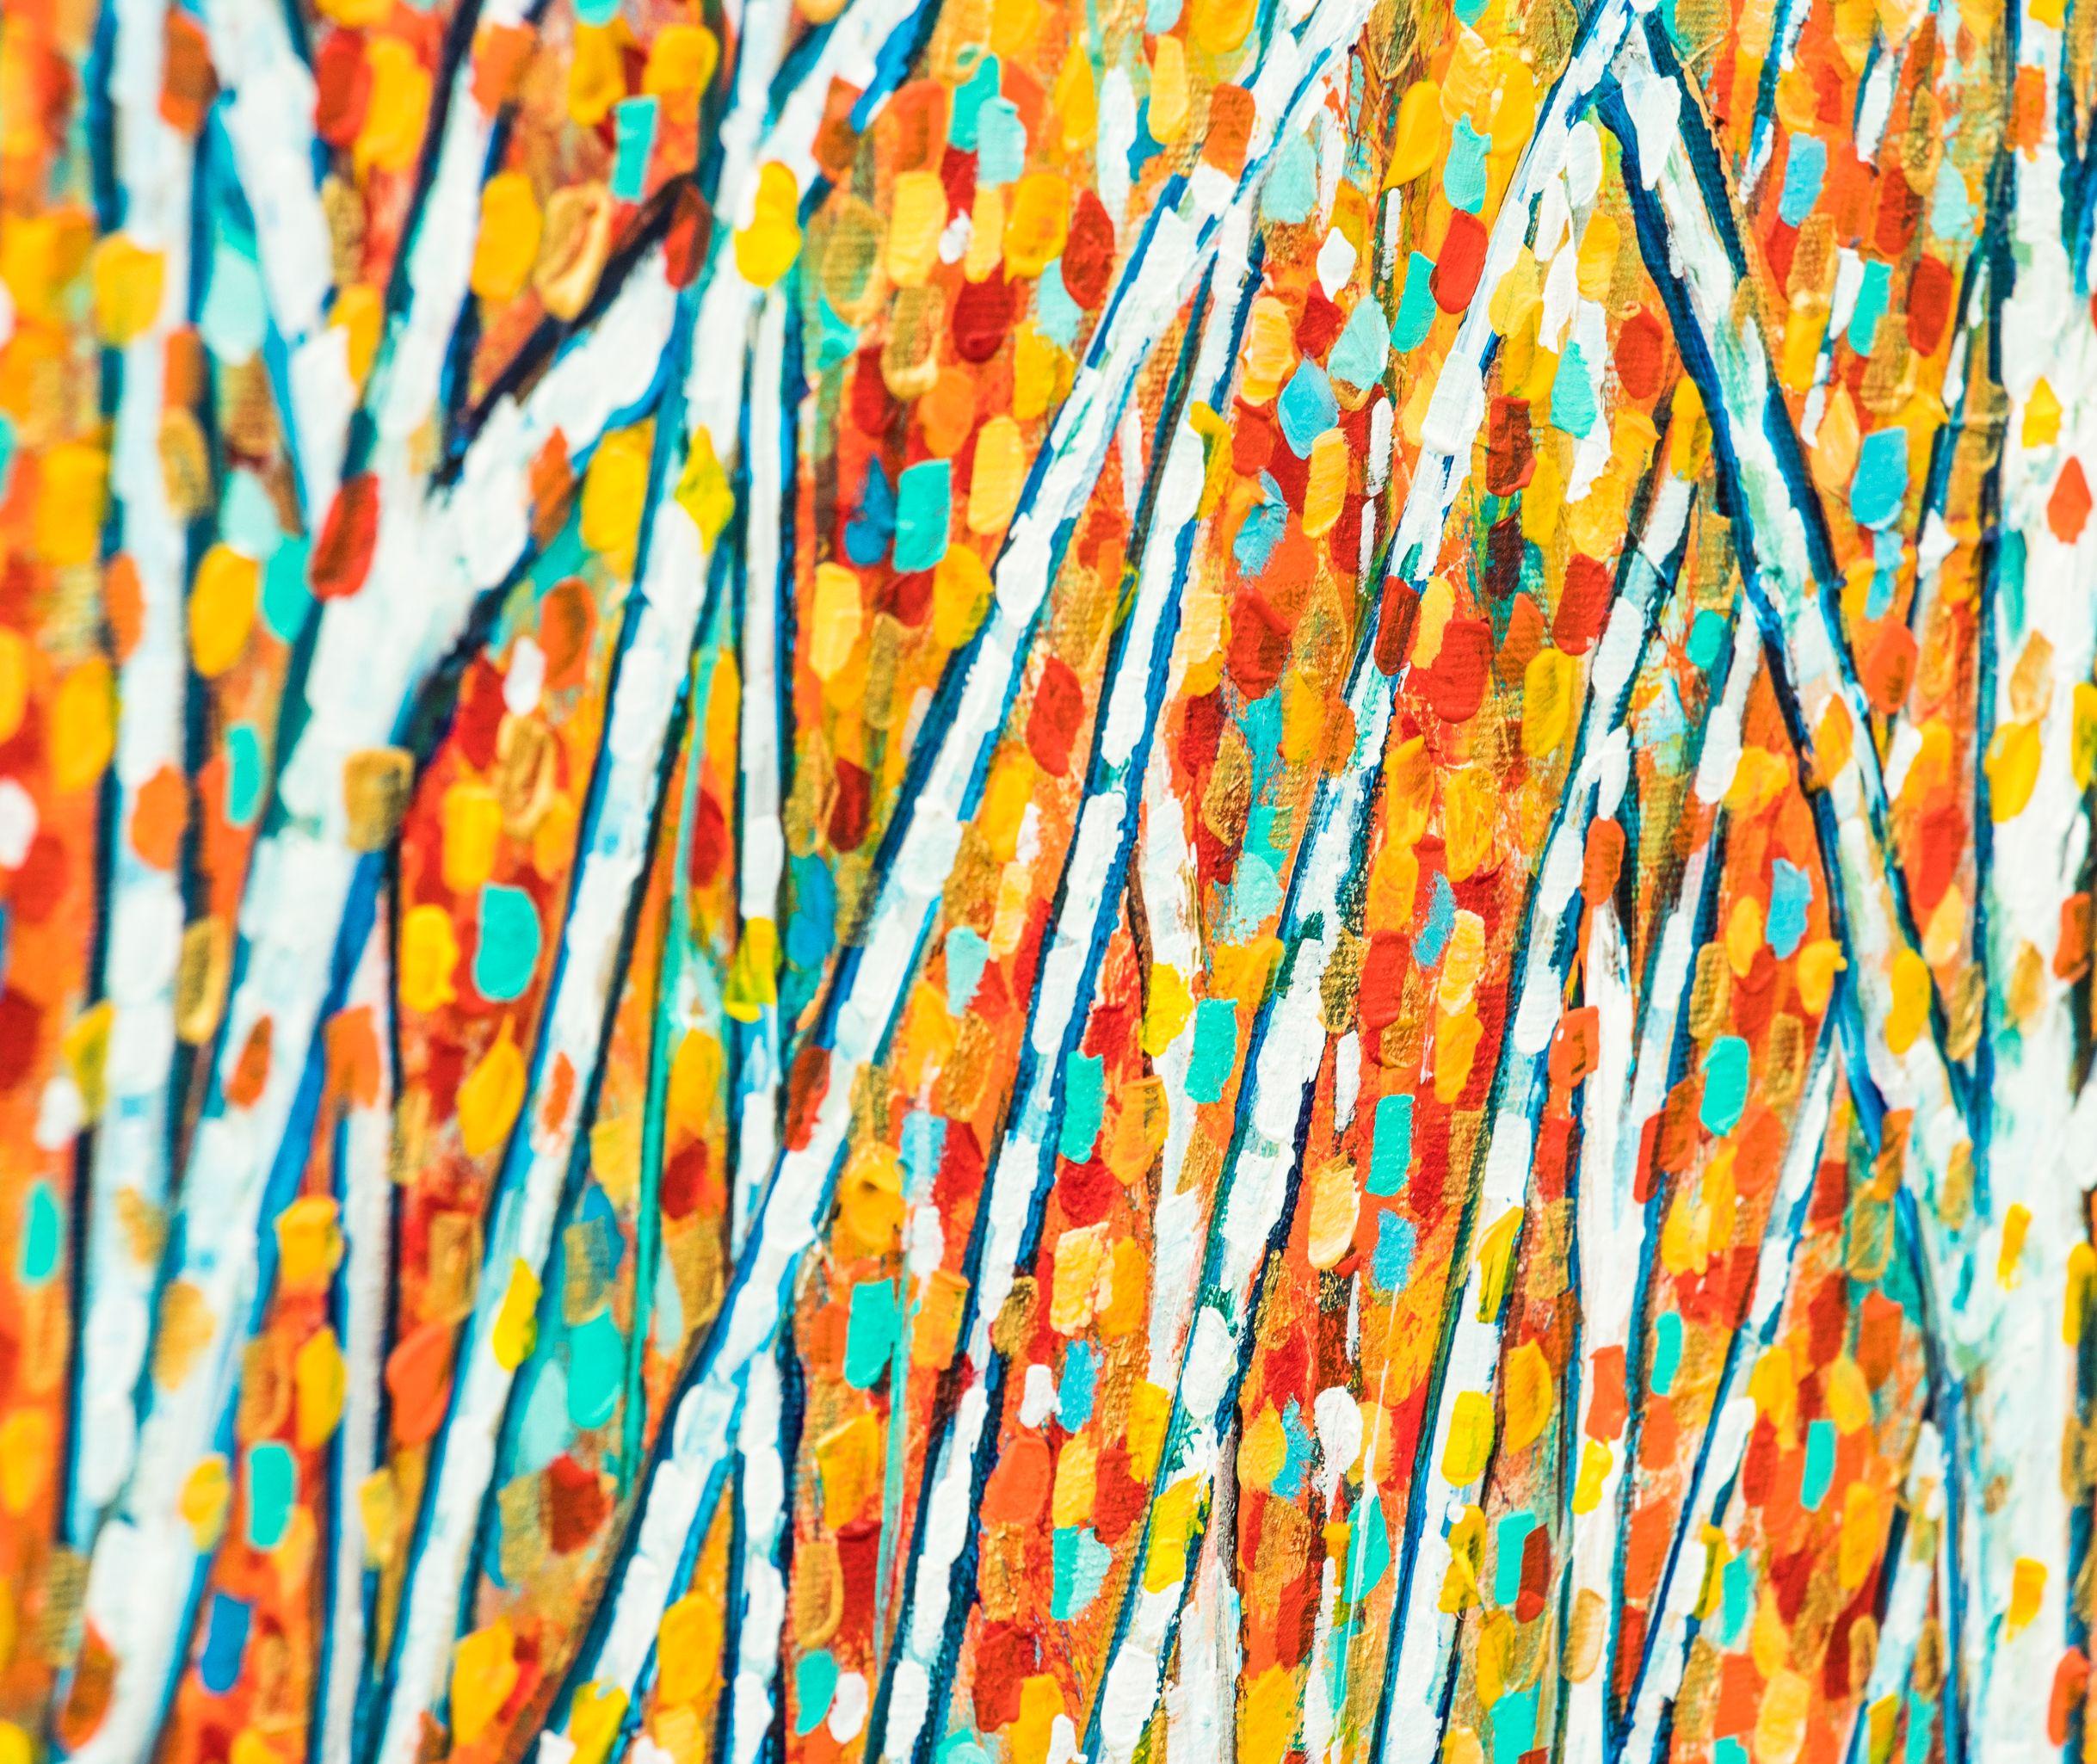 Peinture : Acrylique sur toile.    Arbres d'automne  Peinture impressionniste, technique du pointillisme.  Dans le feuillage des arbres, j'ai également utilisé de la peinture métallique dorée, qui apporte plus de brillance au tableau lorsqu'il est